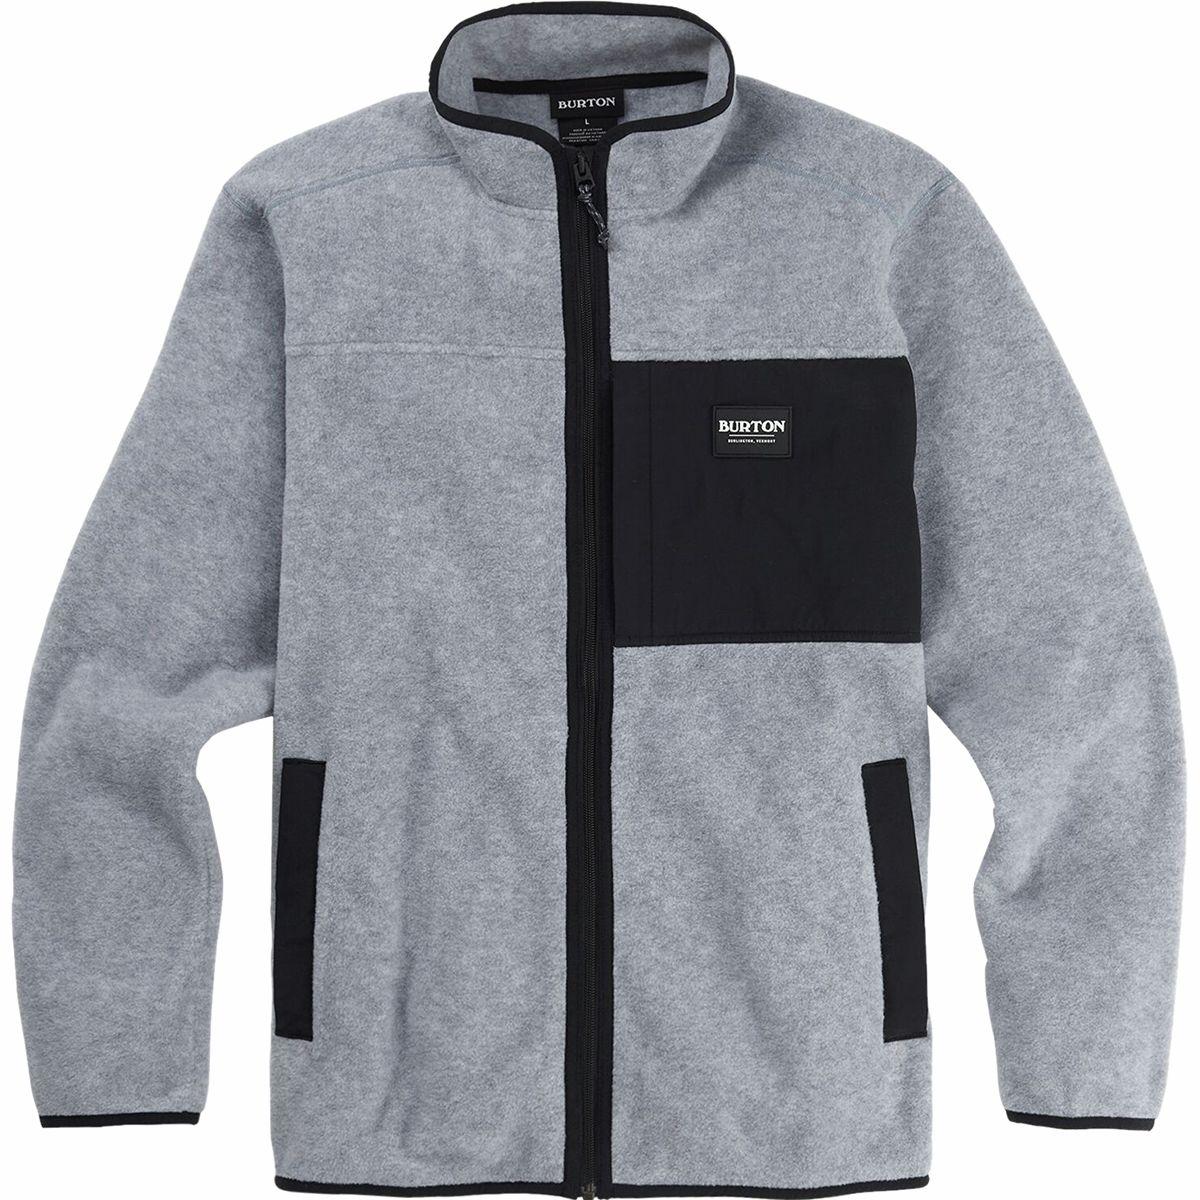 Burton Fleece Hearth Full-zip Jacket in Gray for Men - Lyst